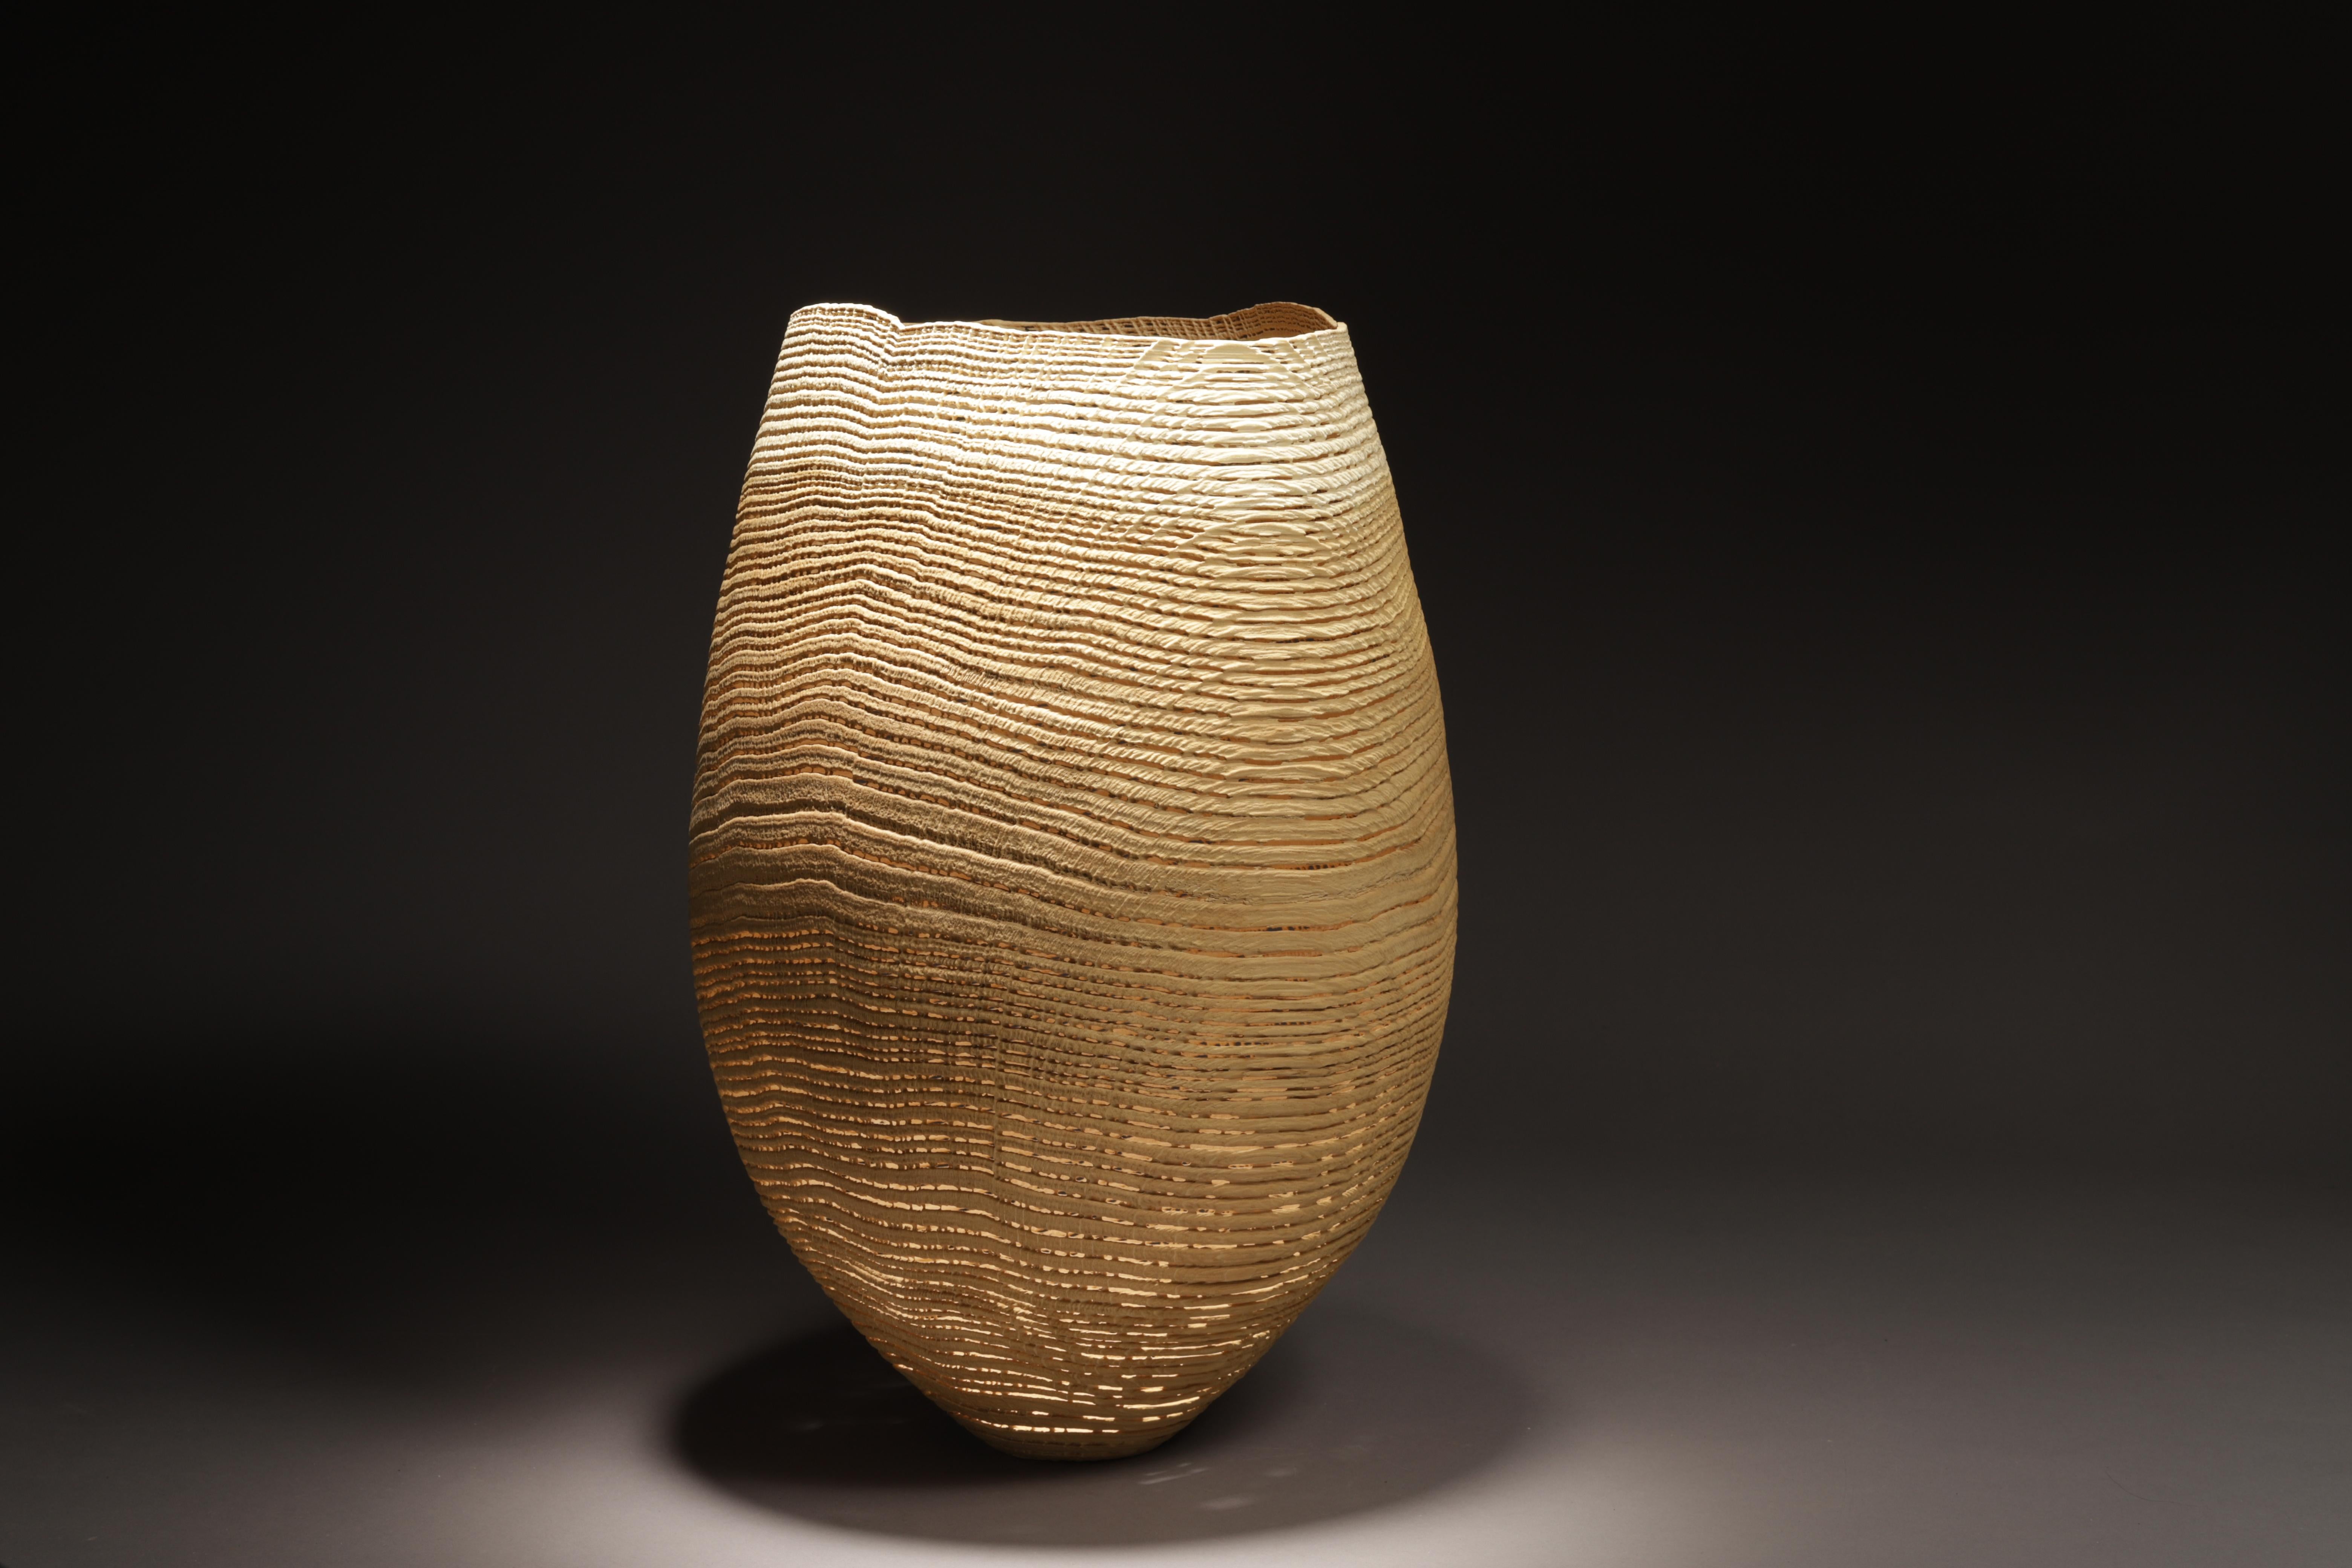 Natural beige color Vase Sculpture 1029 - Lathe-Turned & Sandblasted wood Oak - Art by pascal oudet